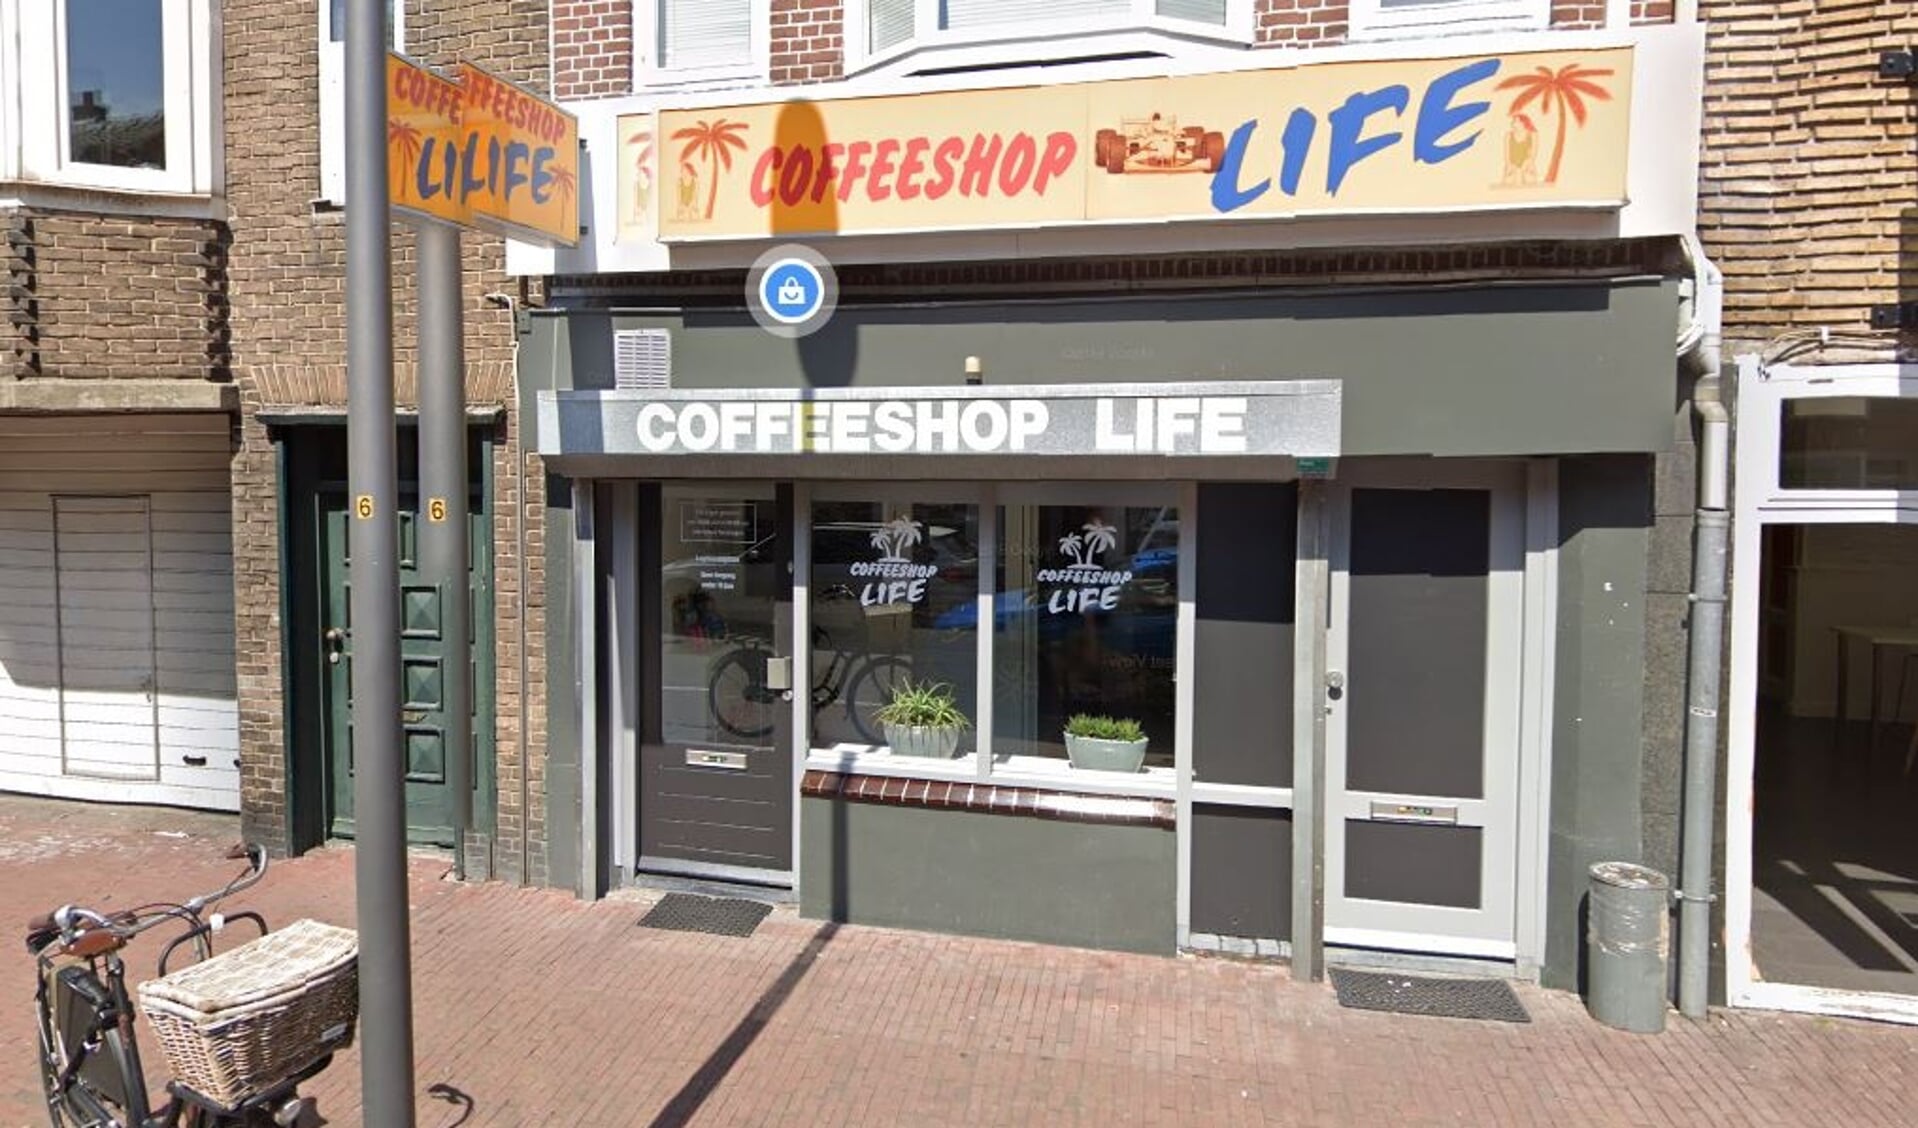 Coffeeshop life is alweer gesloten.